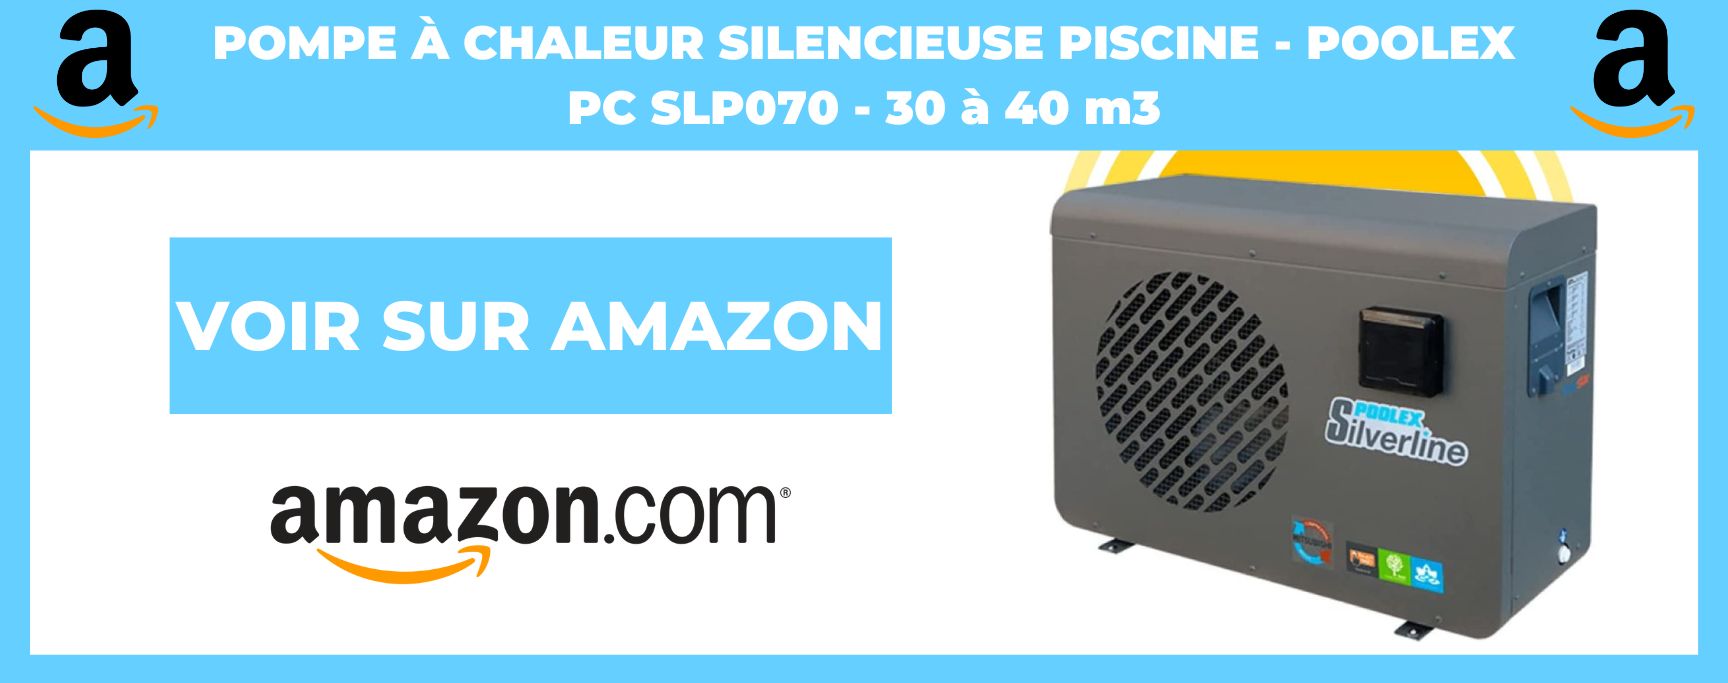 Pompe à Chaleur Silencieuse Piscine - Poolex PC SLP070 - 30 à 40 m3